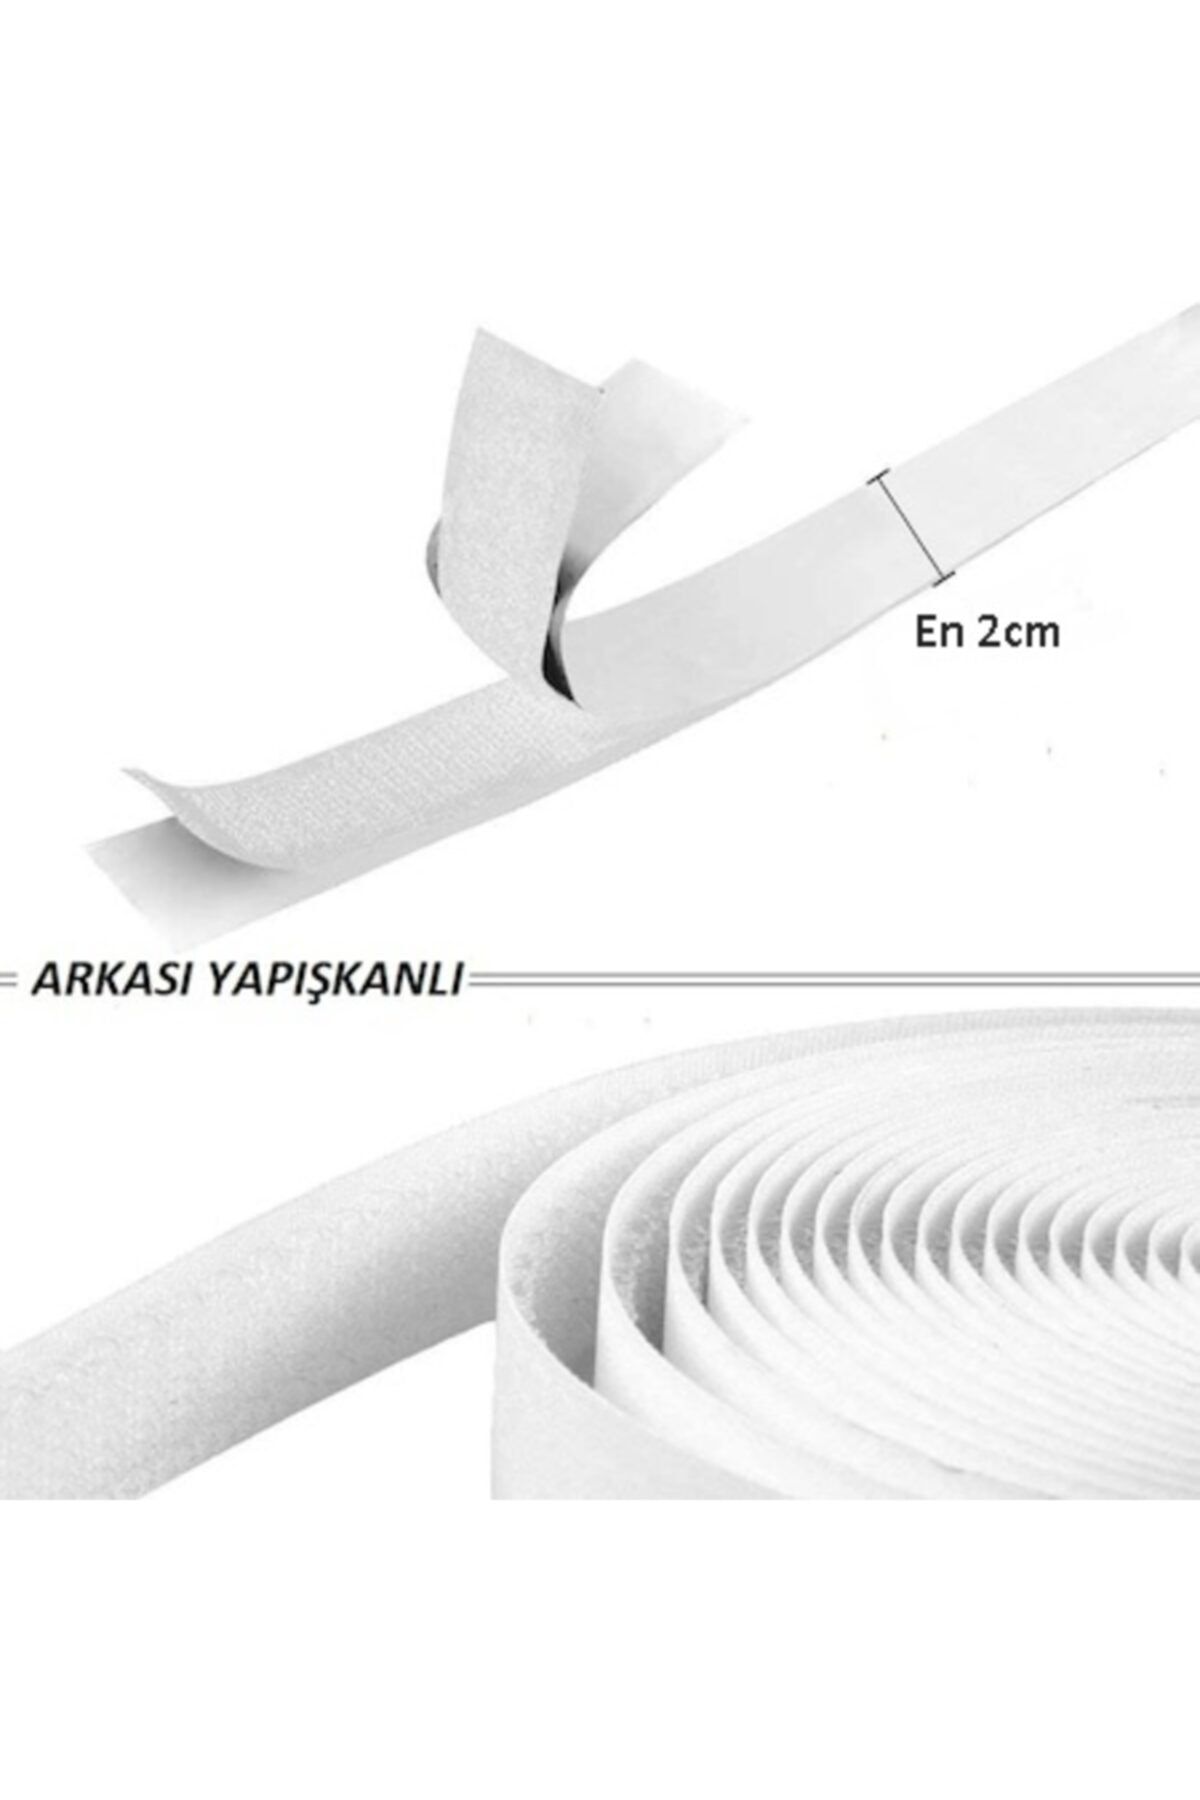 Kezban Tekstil 5 Metre Arkası Yapışkanlı Beyaz Cırt Cırtlı Bant Amerikan Fermuarı 2 Cm Genişlik